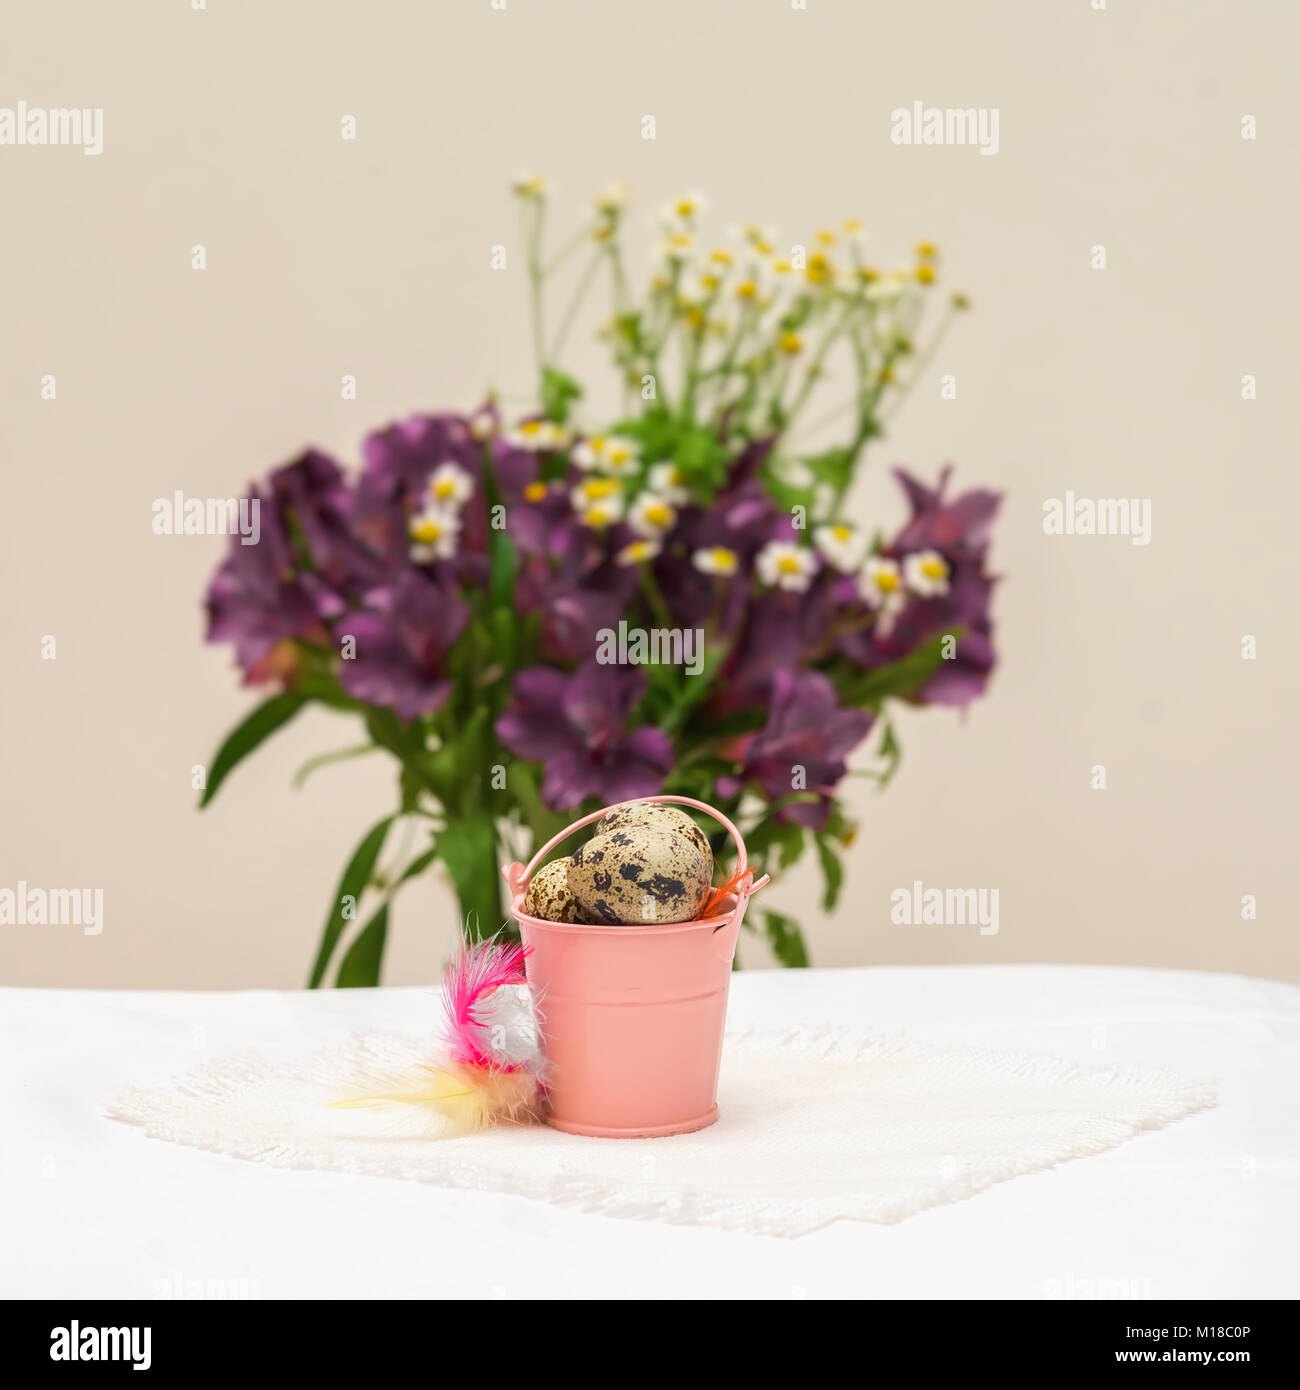 Natürliche Wachteleier in kleinen rosa Eimer, bunten Federn vor Violett Blumen, leicht rustikal Serviette auf dem Tisch, selektive konzentrieren. Ostern, Frühling, biologische Lebensmittel, Ernährung Stockfoto